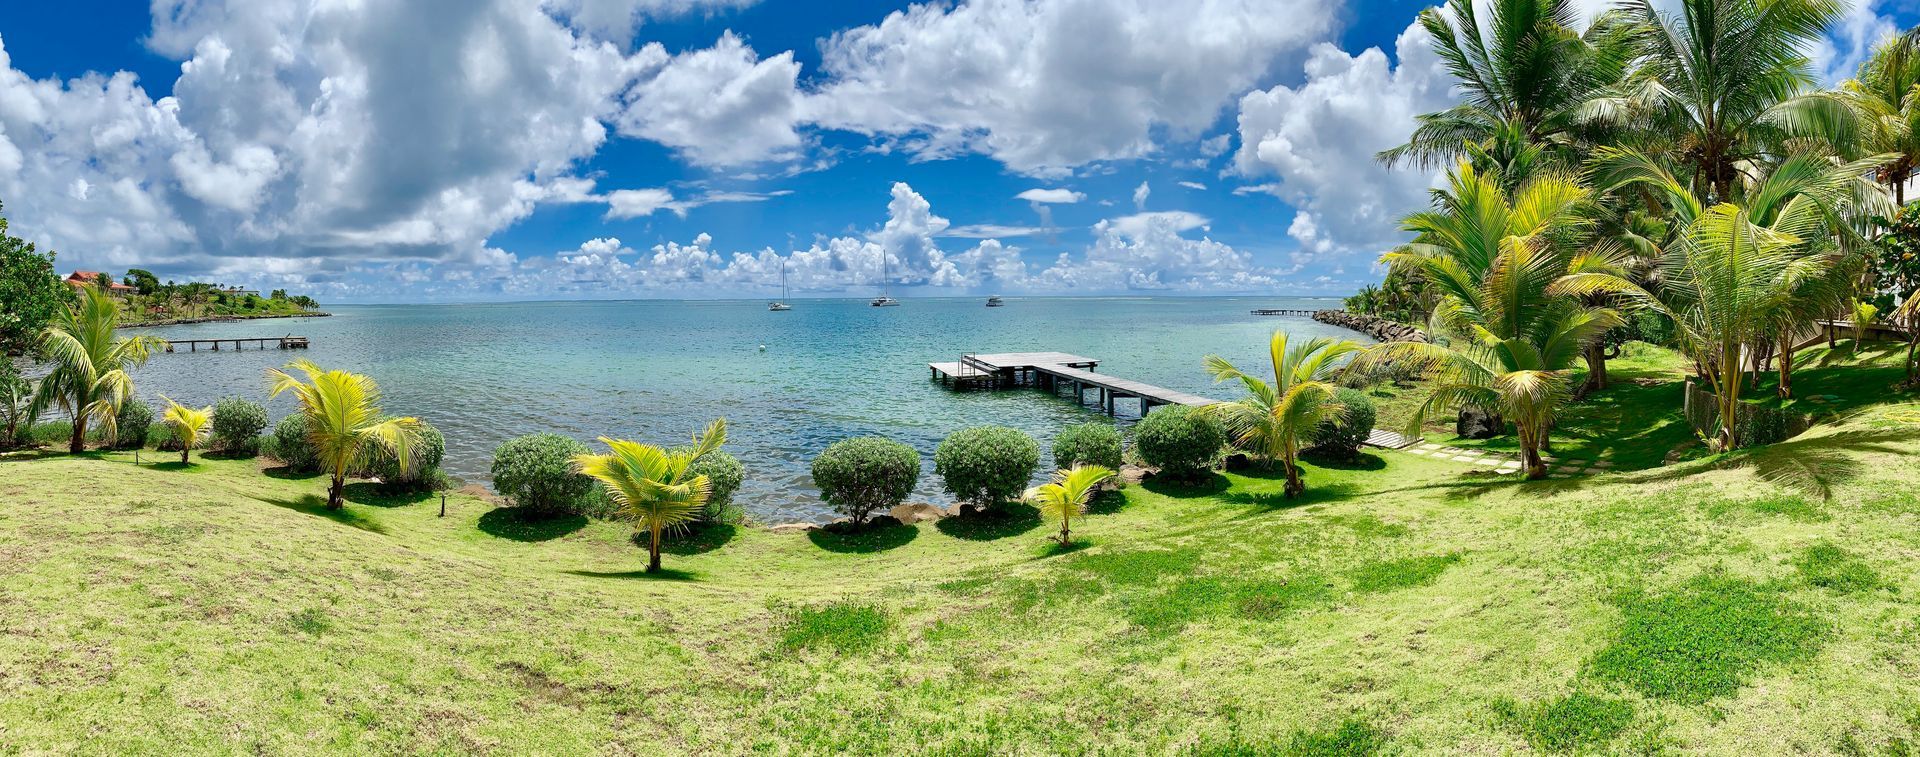 Cliché du lagon au Domaine des fonds blancs - Martinique